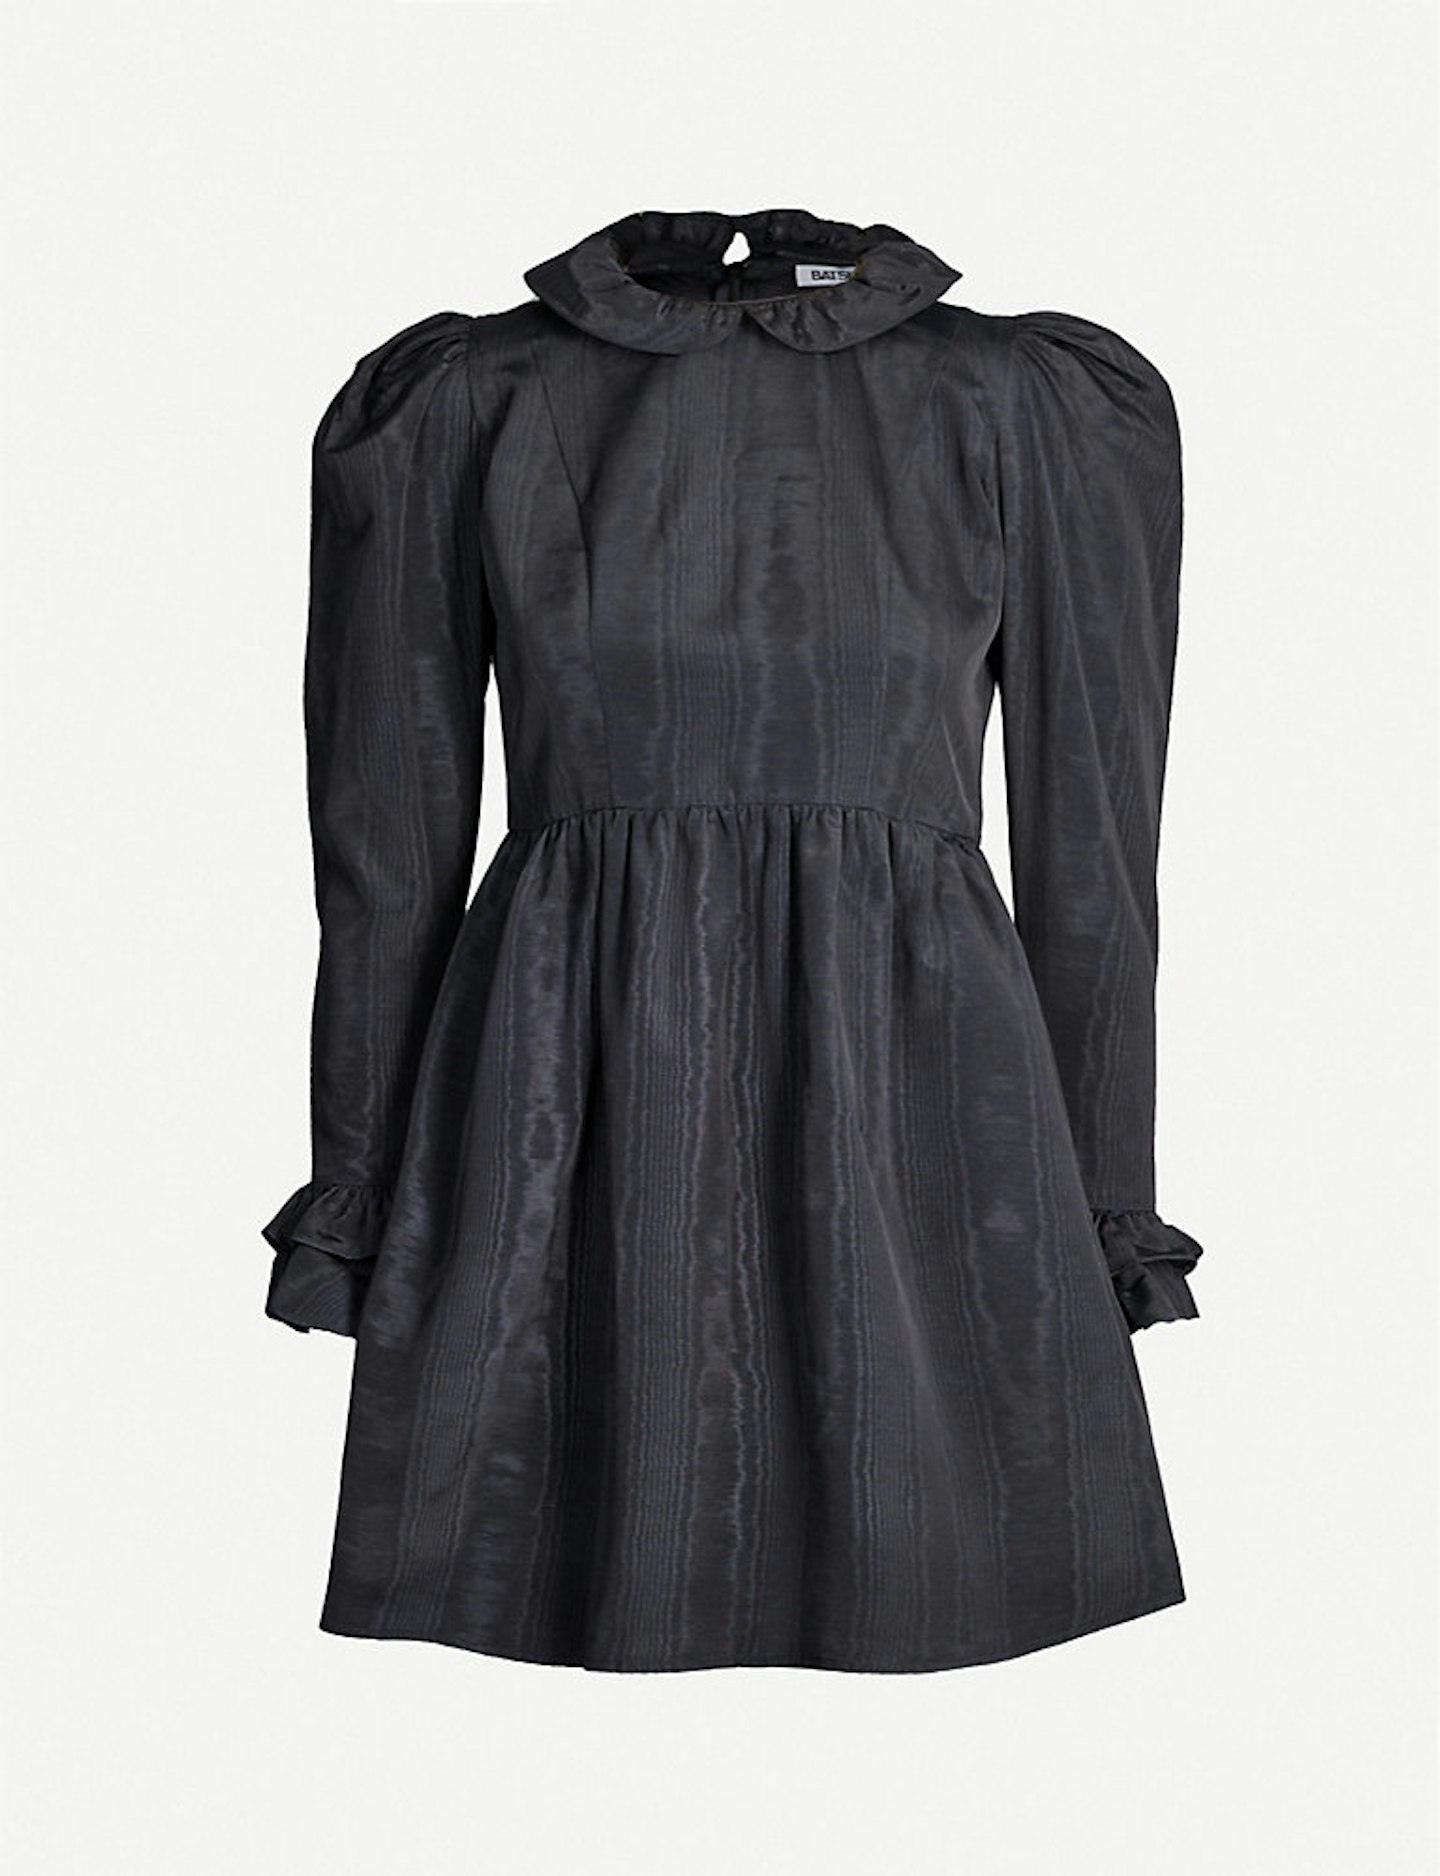 Batsheva black dress